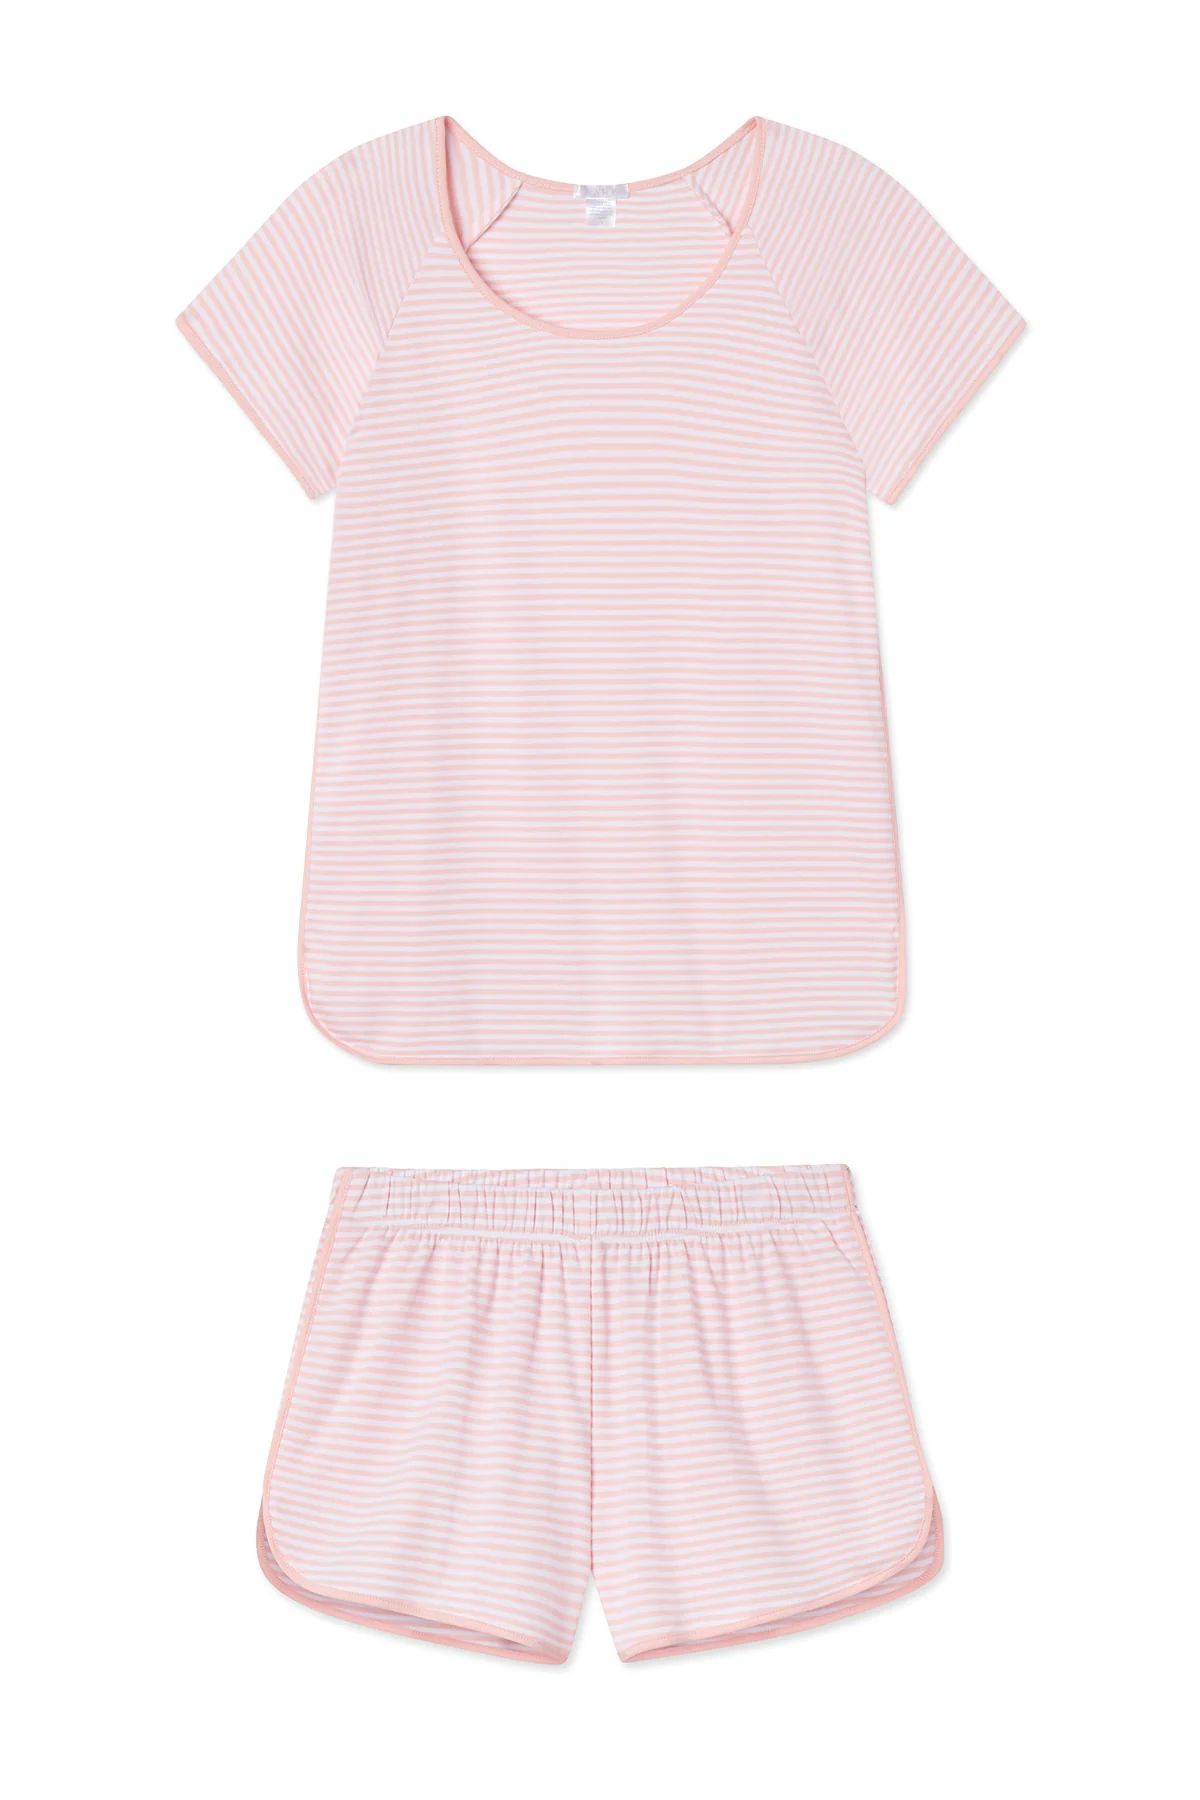 Pima Shorts Set in English Rose Stripe | Lake Pajamas